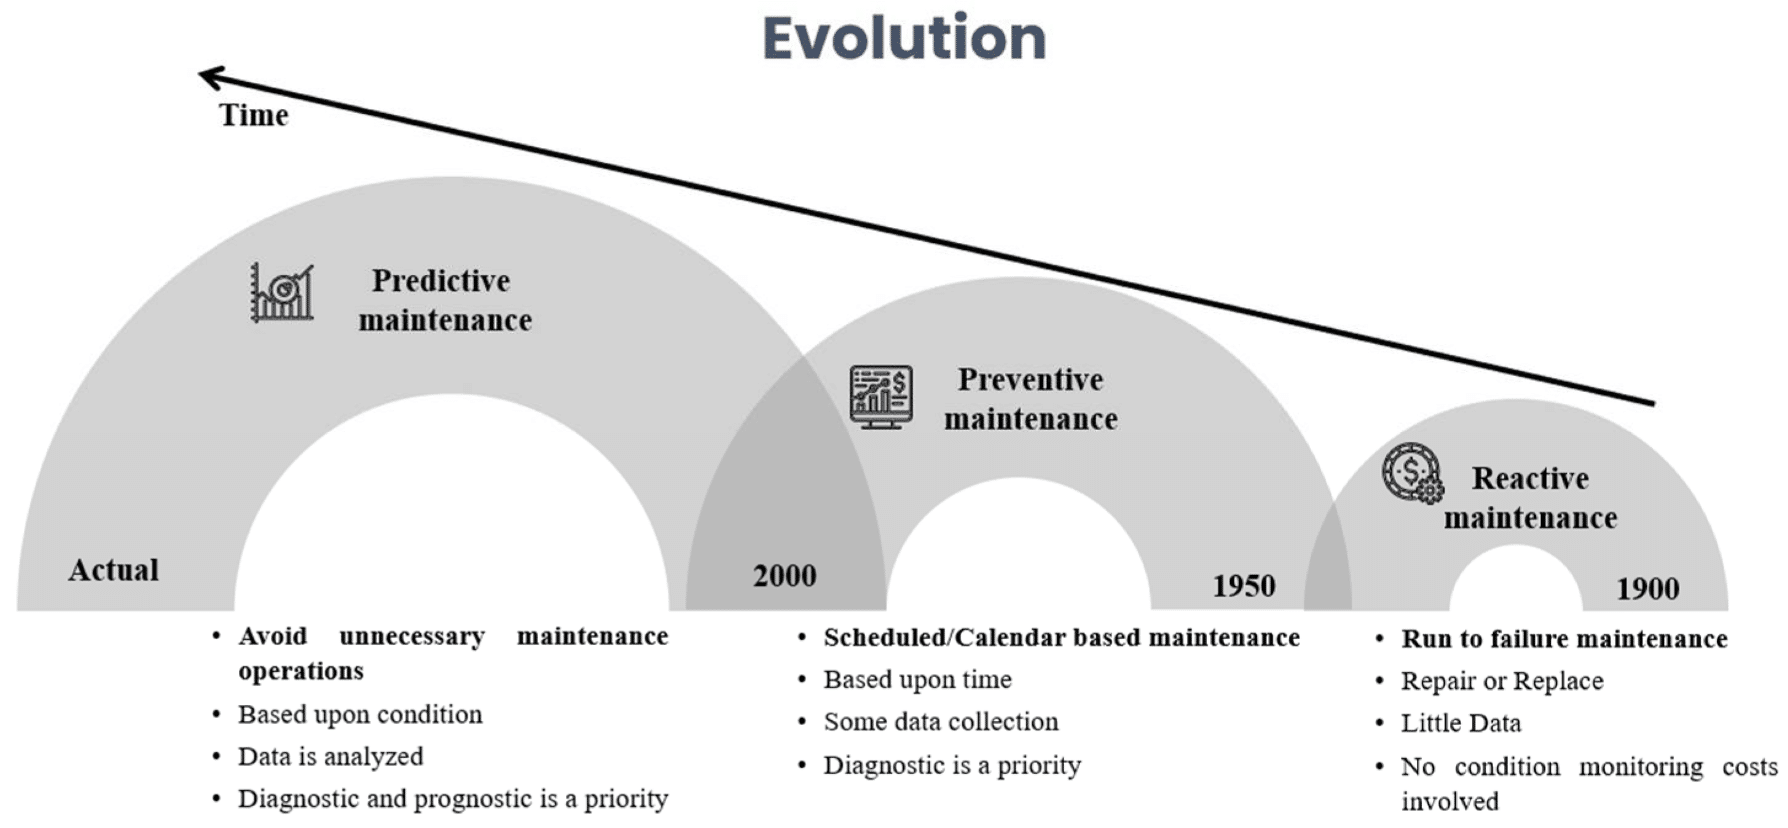 Evolution of Preventive and Predictive Maintenance